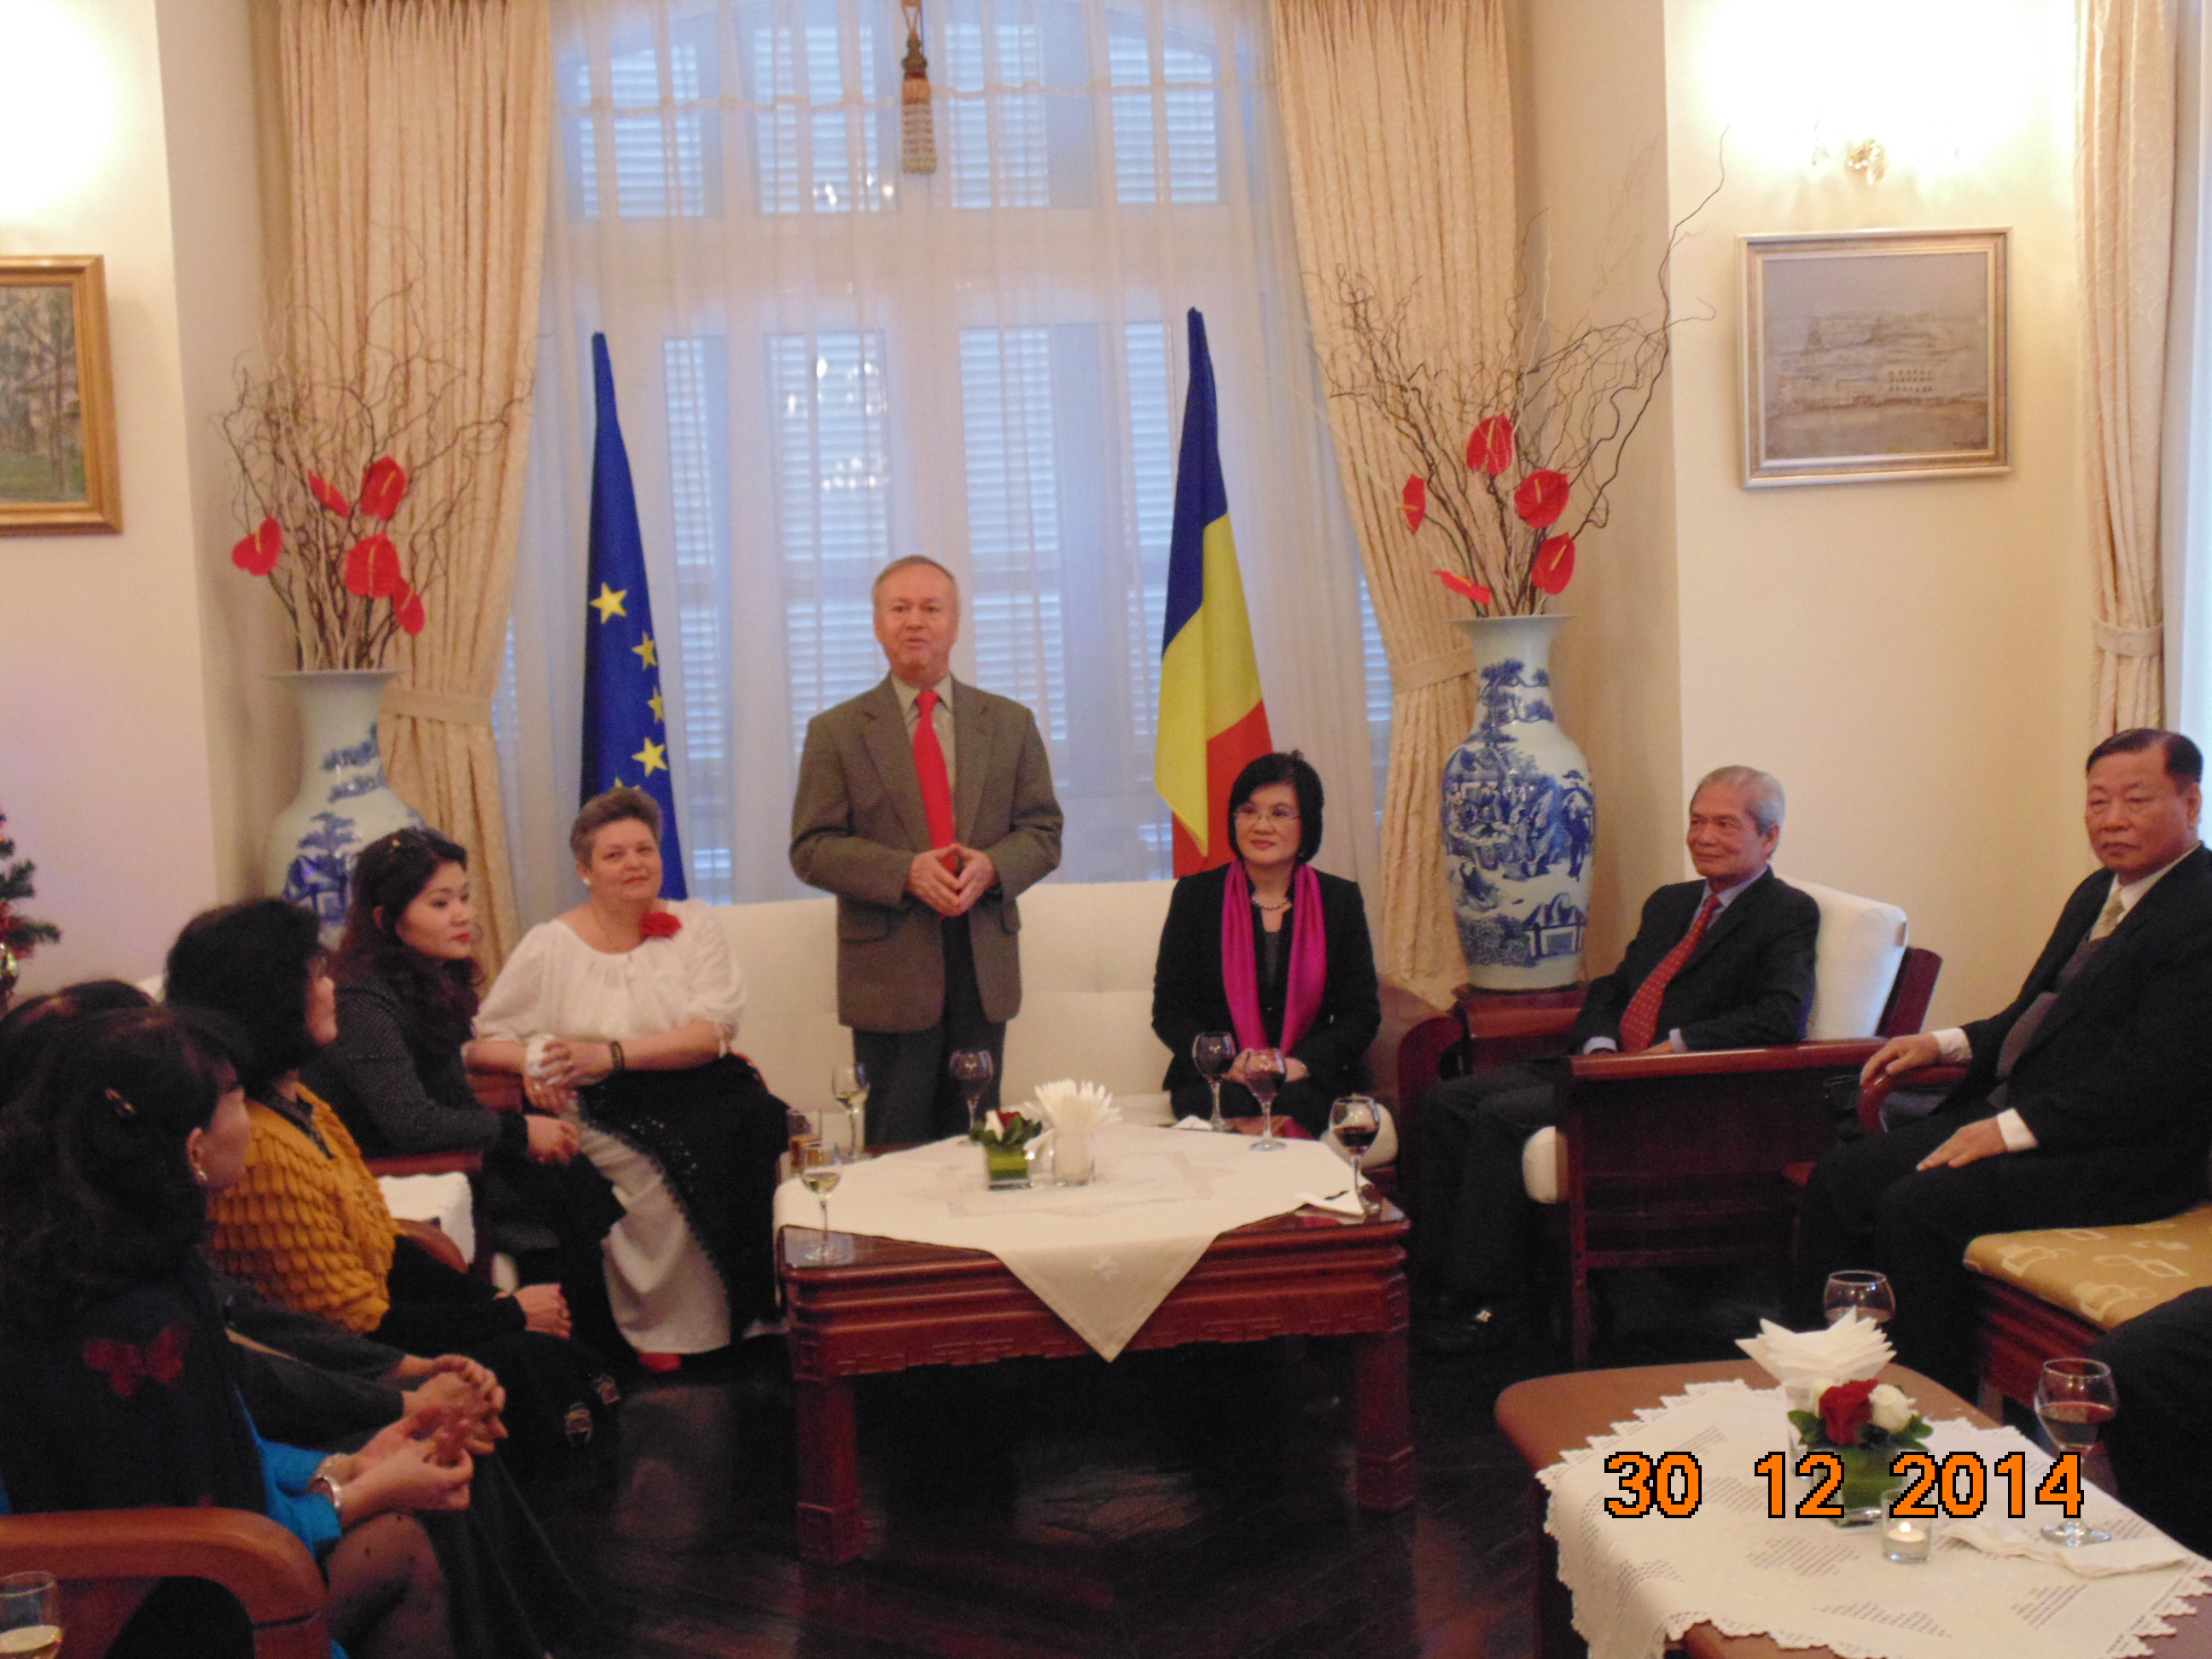 Đại sứ quán Rumani tiếp khách nhân dịp kỷ niệm 65 năm quan hệ hợp tác Việt Nam-Rumani (3/2/1950-3/2/2015)